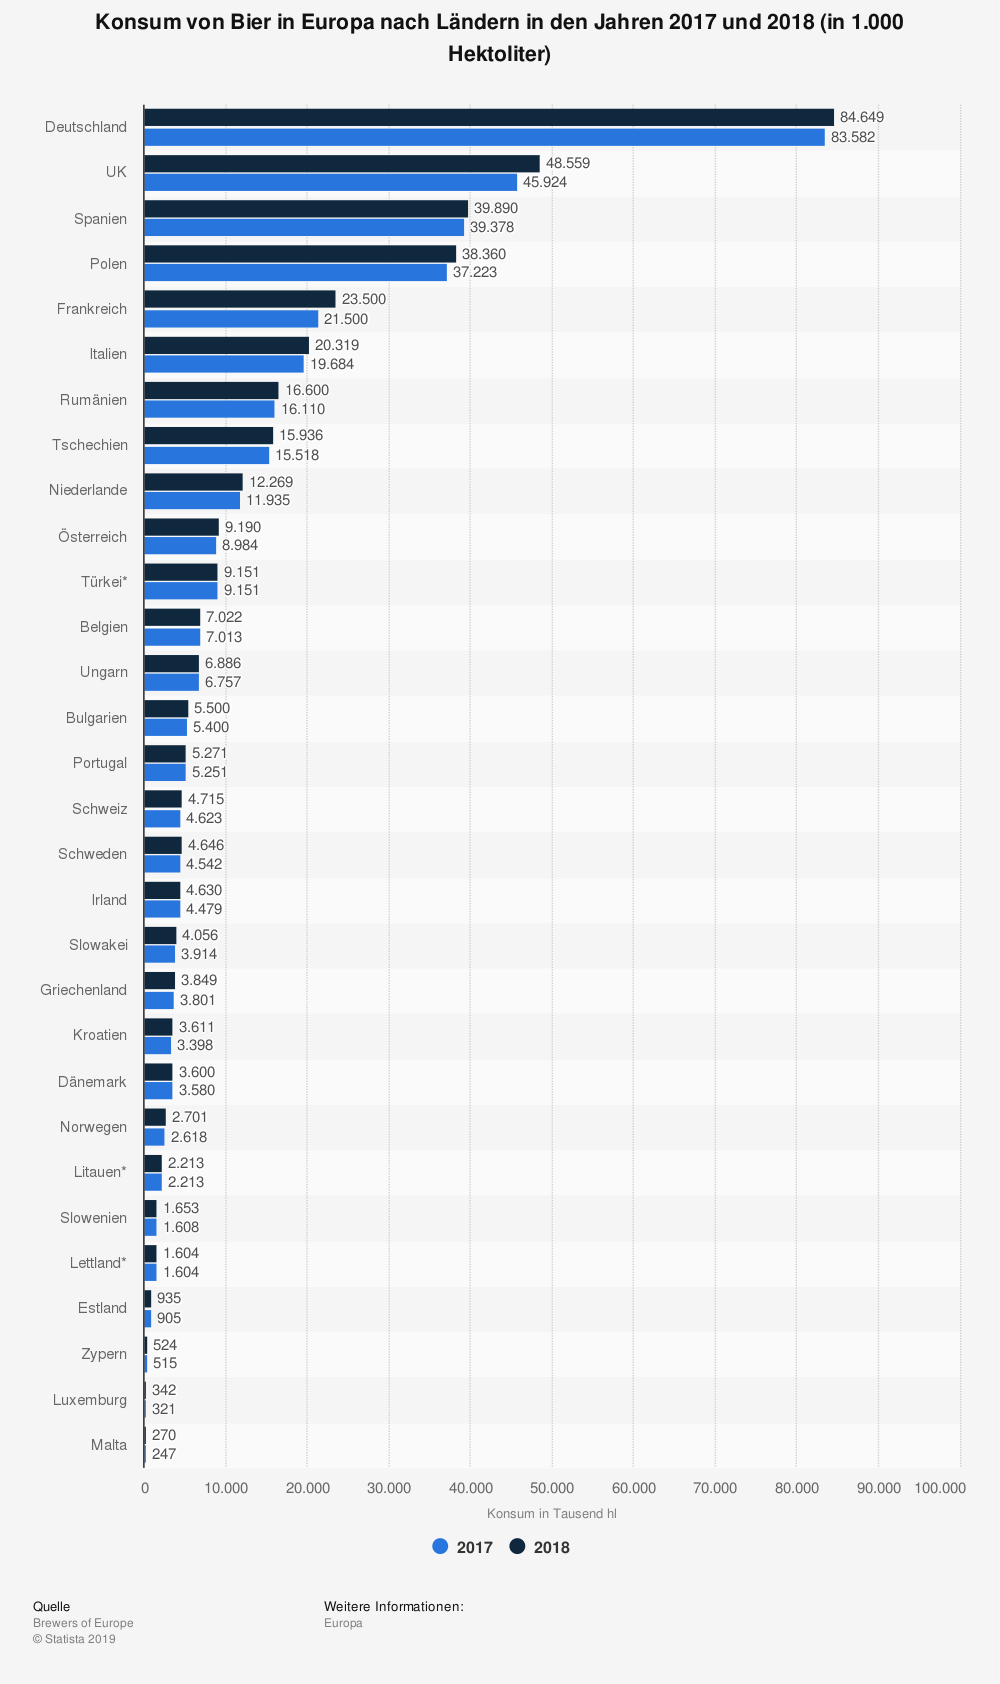 Konsum von Bier in Europa nach Ländern in den Jahren 2017 und 2018